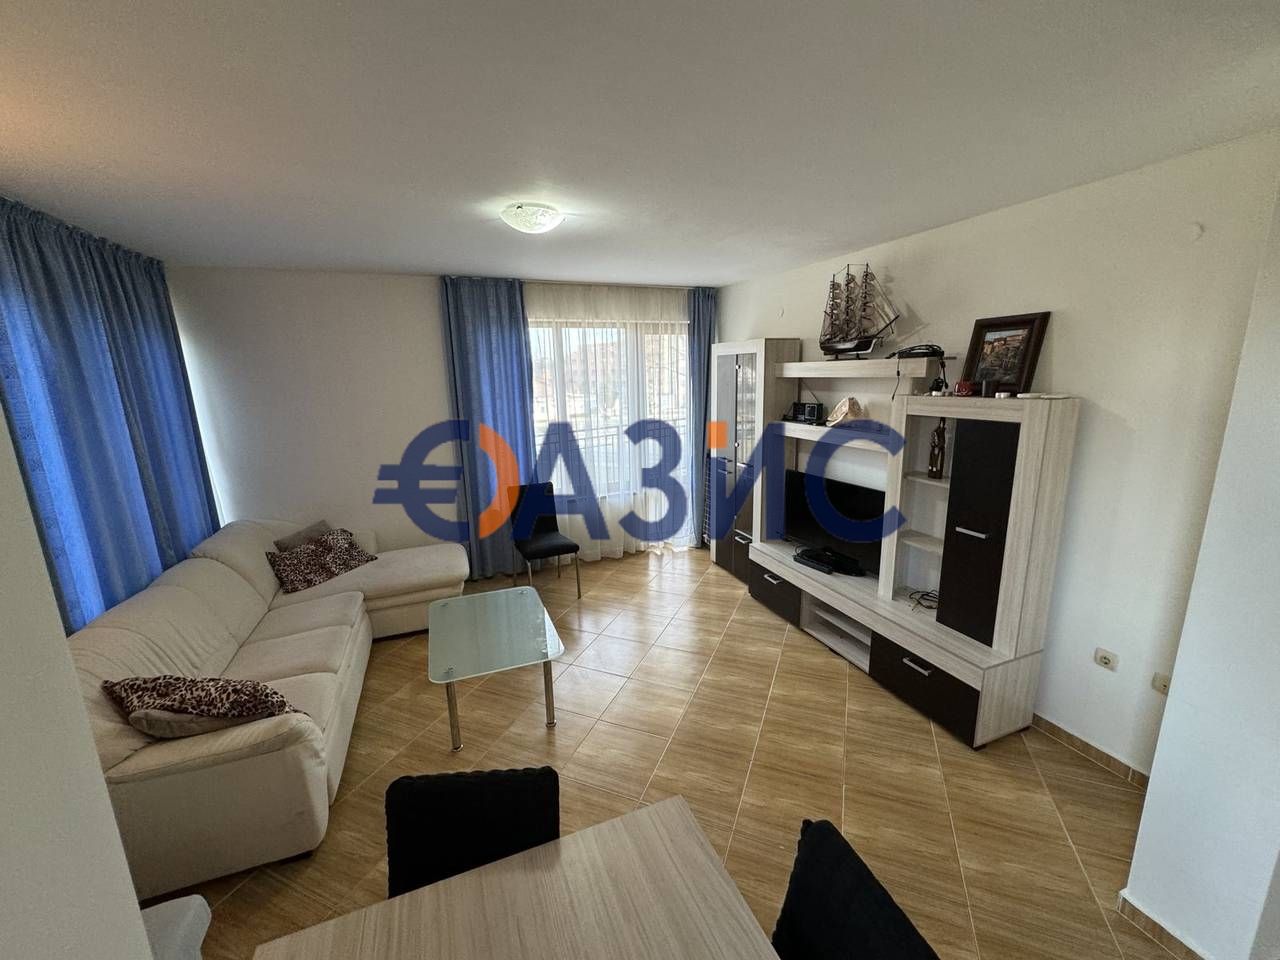 Apartment at Sunny Beach, Bulgaria, 87 sq.m - picture 1